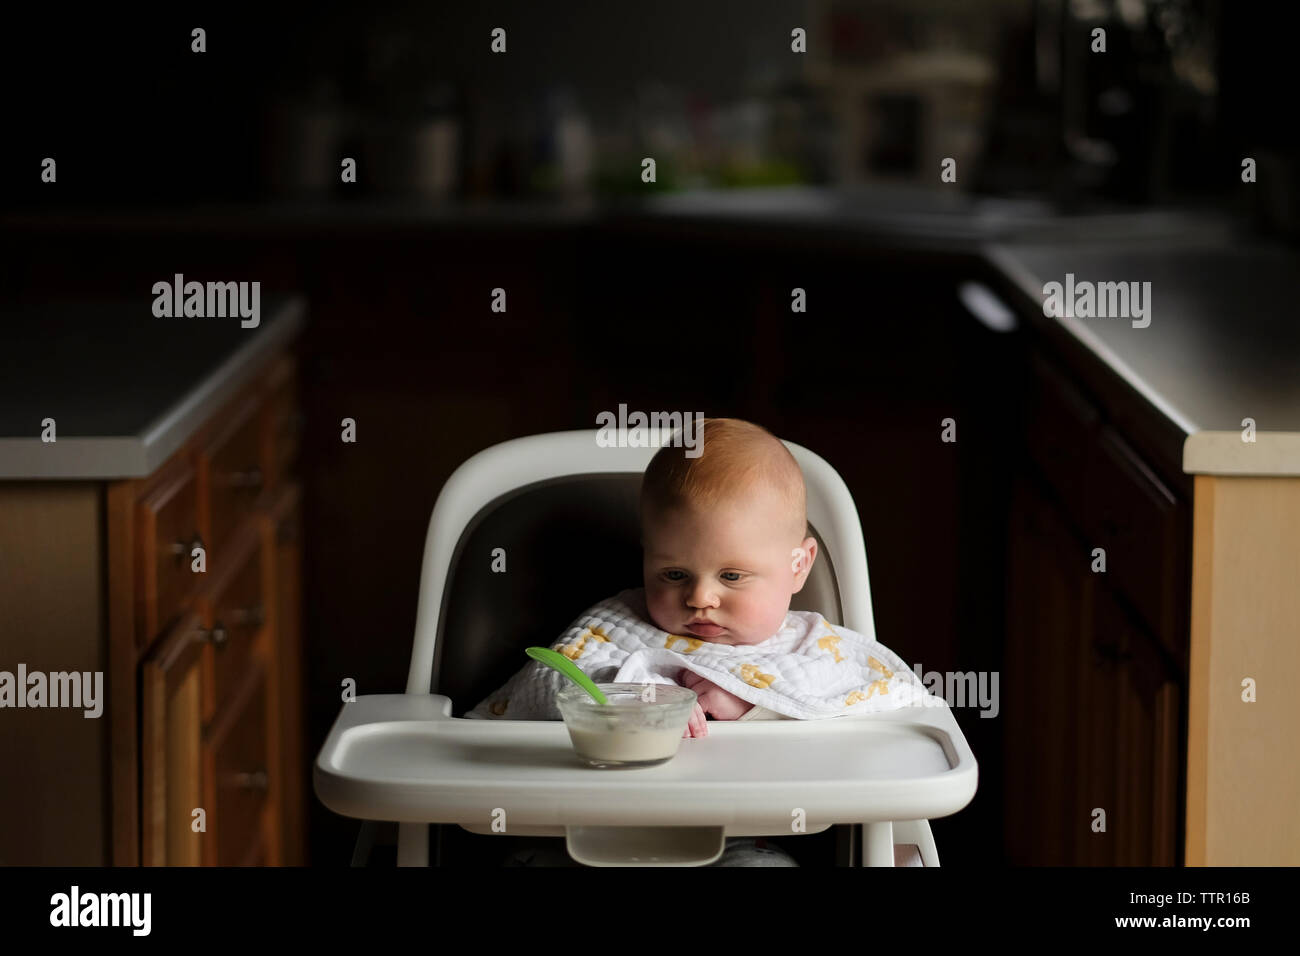 Baby Boy looking at food dans un bol alors qu'il était assis sur la chaise haute Banque D'Images